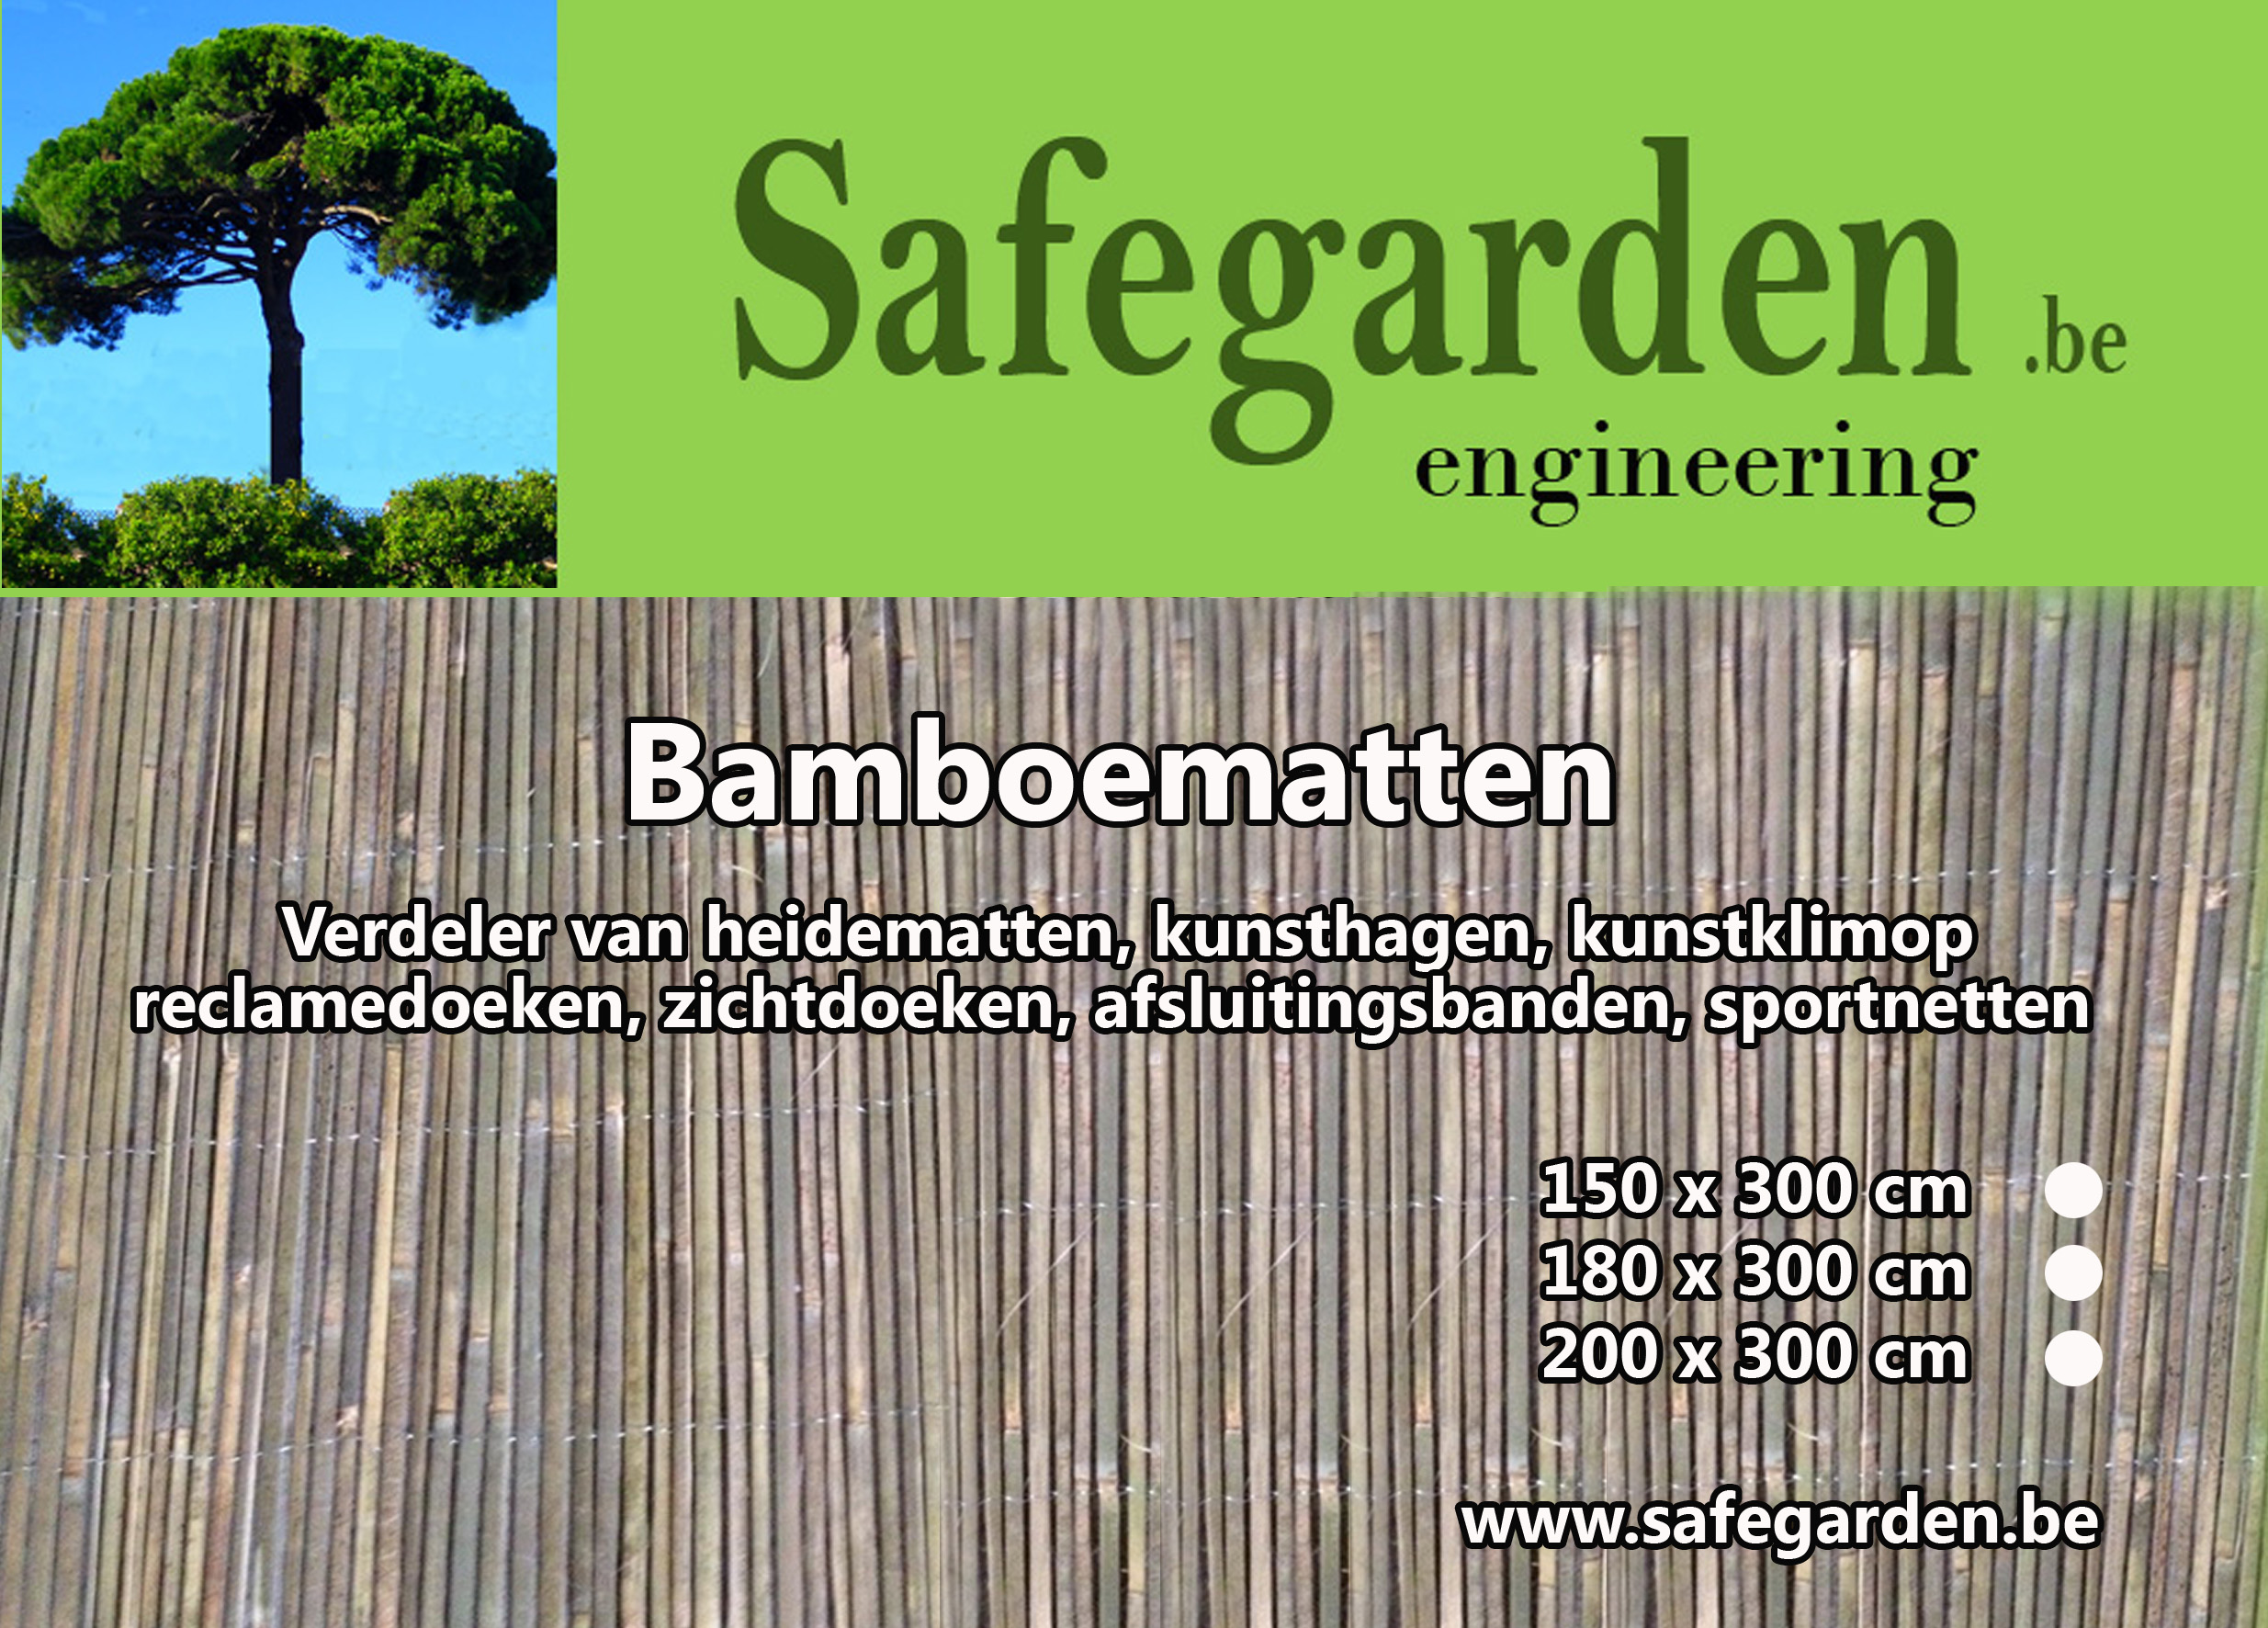 Afwijken deze contact Bamboe matten en rietmatten met prijzen vanaf 24,01€ - ook ecocheques